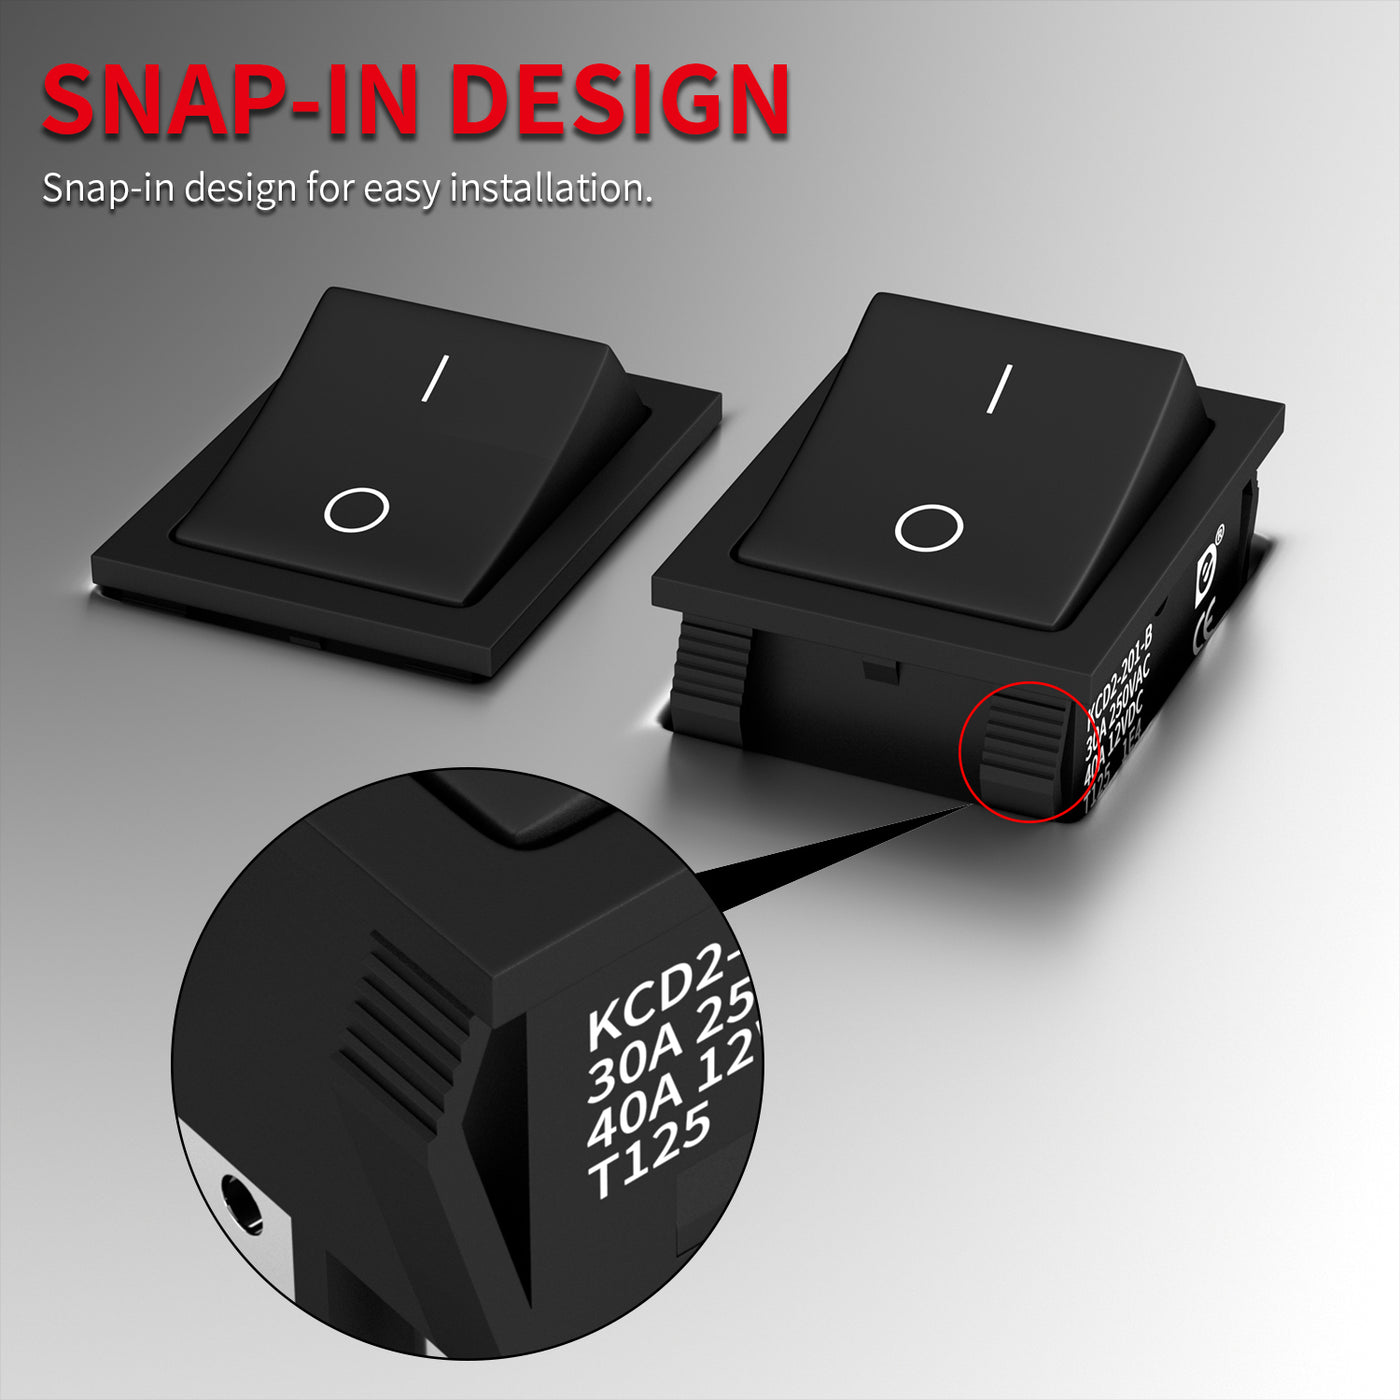 KCD2-201-B Snap-in Design KCD4 Rocker Switch